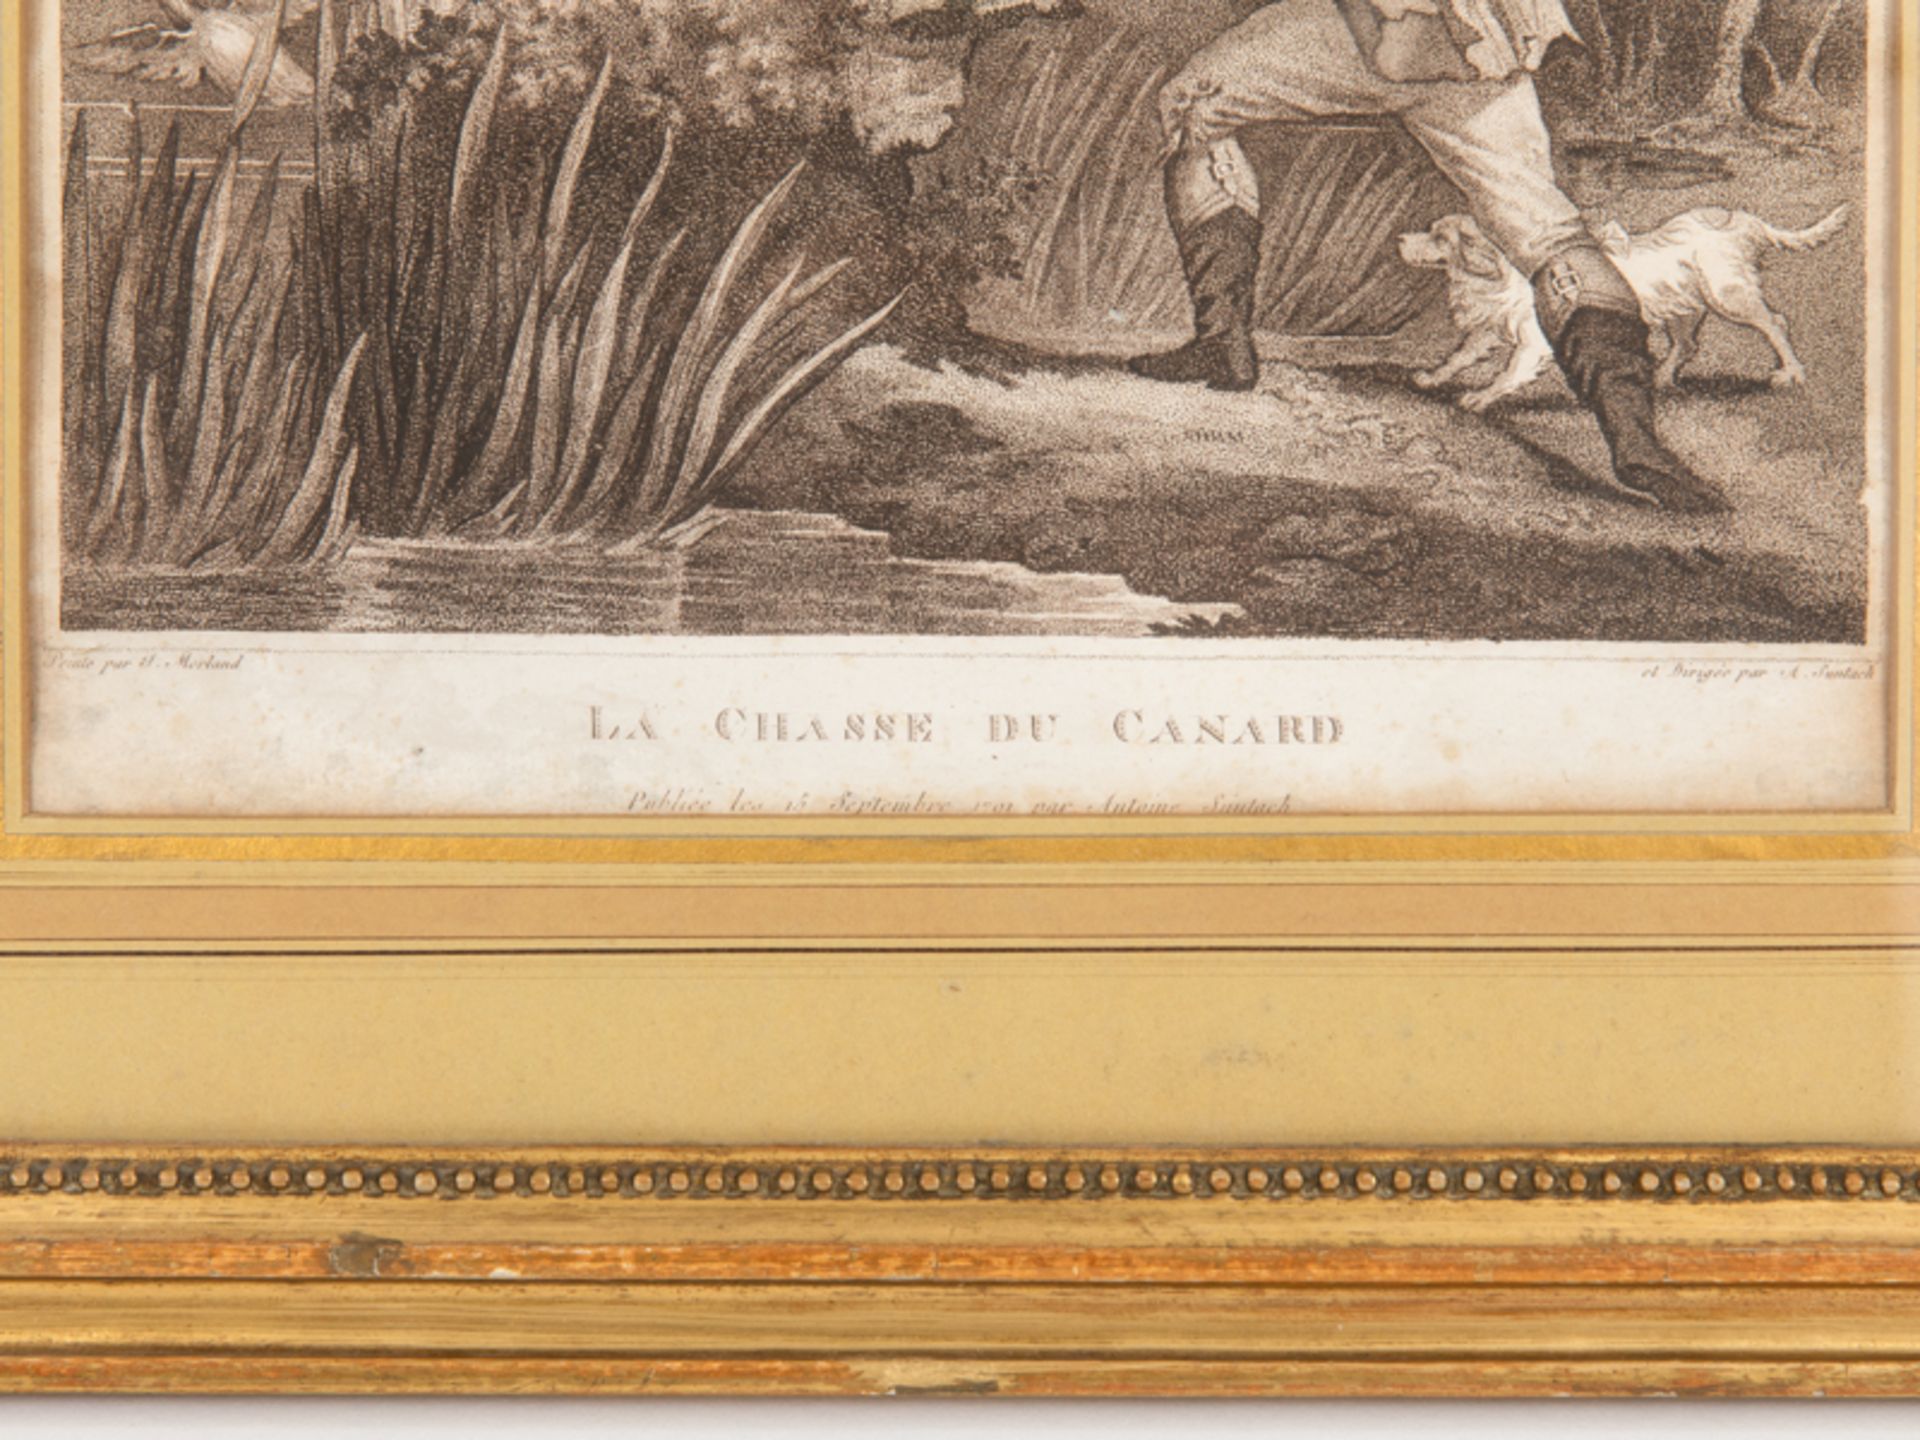 Suntach, Antonio (1744 - 1828). br4 sepiafarbige Lithographien von 1791/92 nach GemÃ¤ldevorlagen von - Image 9 of 9